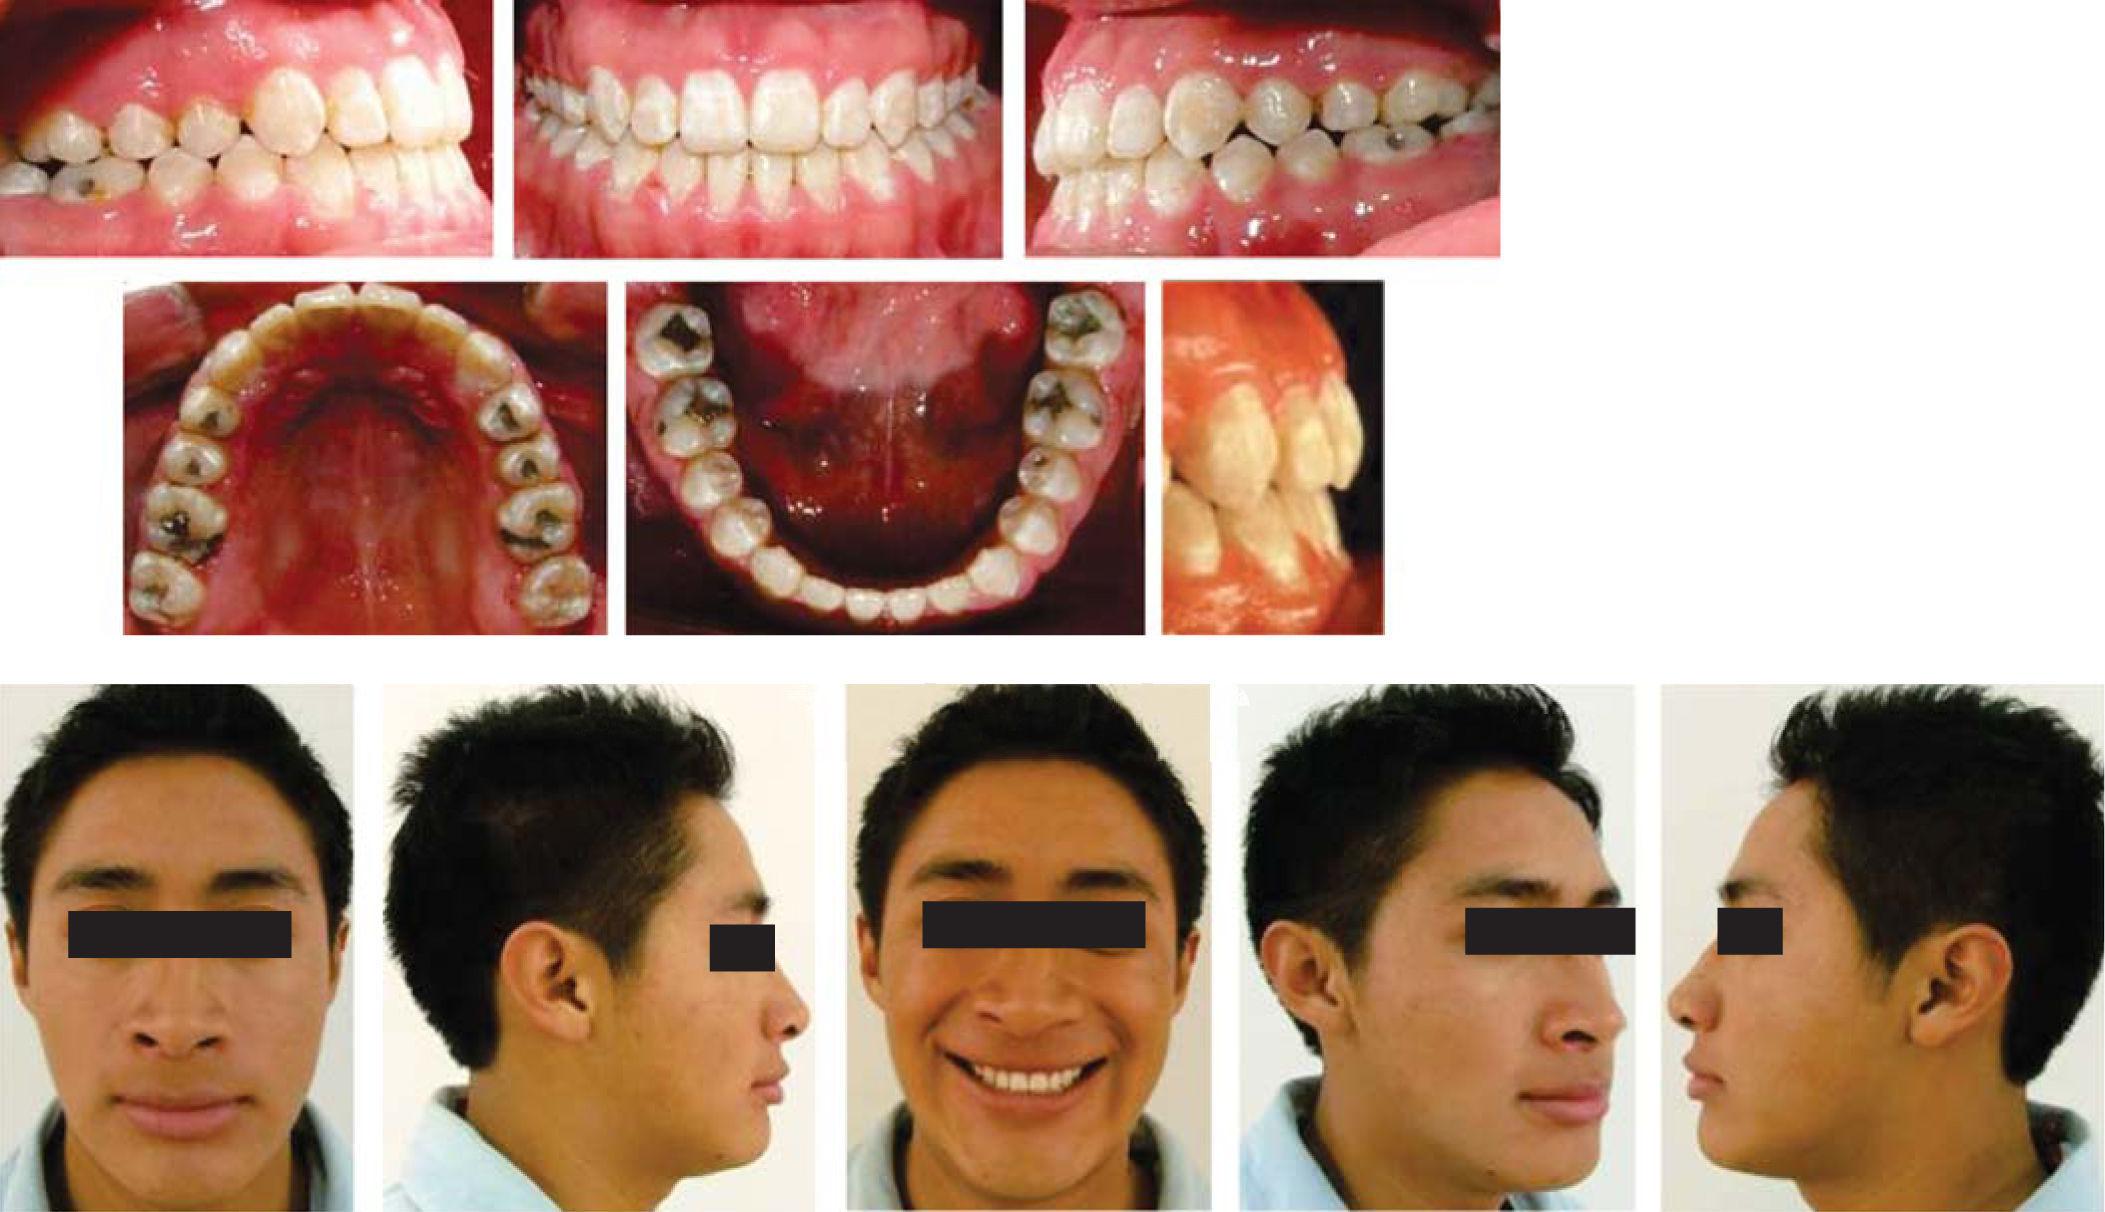 Ortodoncia y cirugía maxilofacial: un equipo multidisciplinario.  Presentación de un caso clínico | Revista Mexicana de Ortodoncia